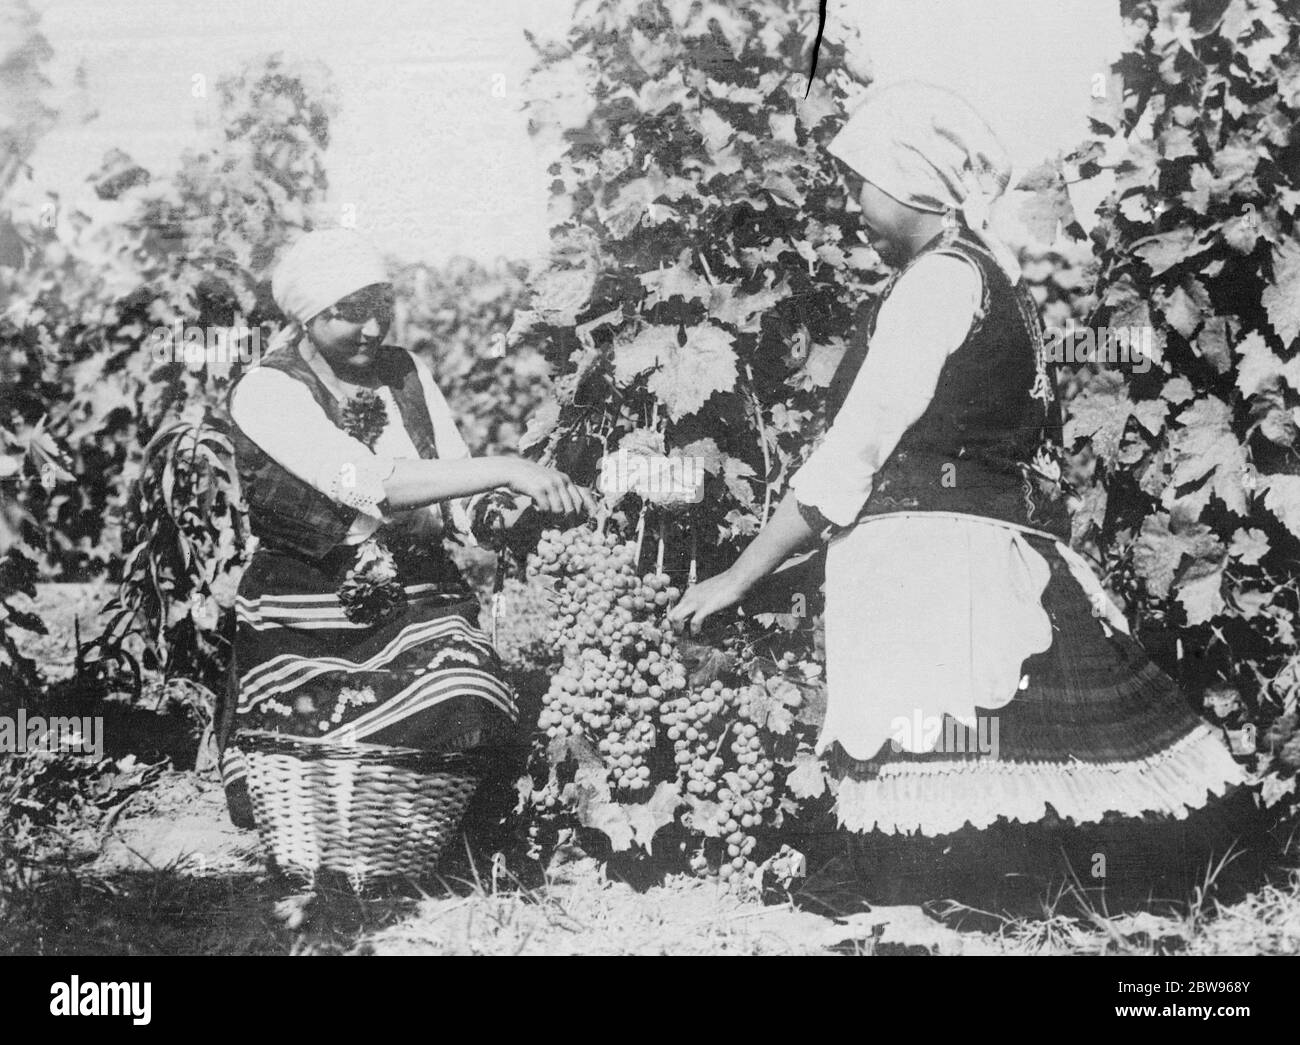 Königinnen der jugoslawischen Weinlese . Zwei Königinnen der jugoslawischen Weinlese, mit Trauben von feinen Früchten nur von den Reben gepflückt. Oktober 1932 Stockfoto